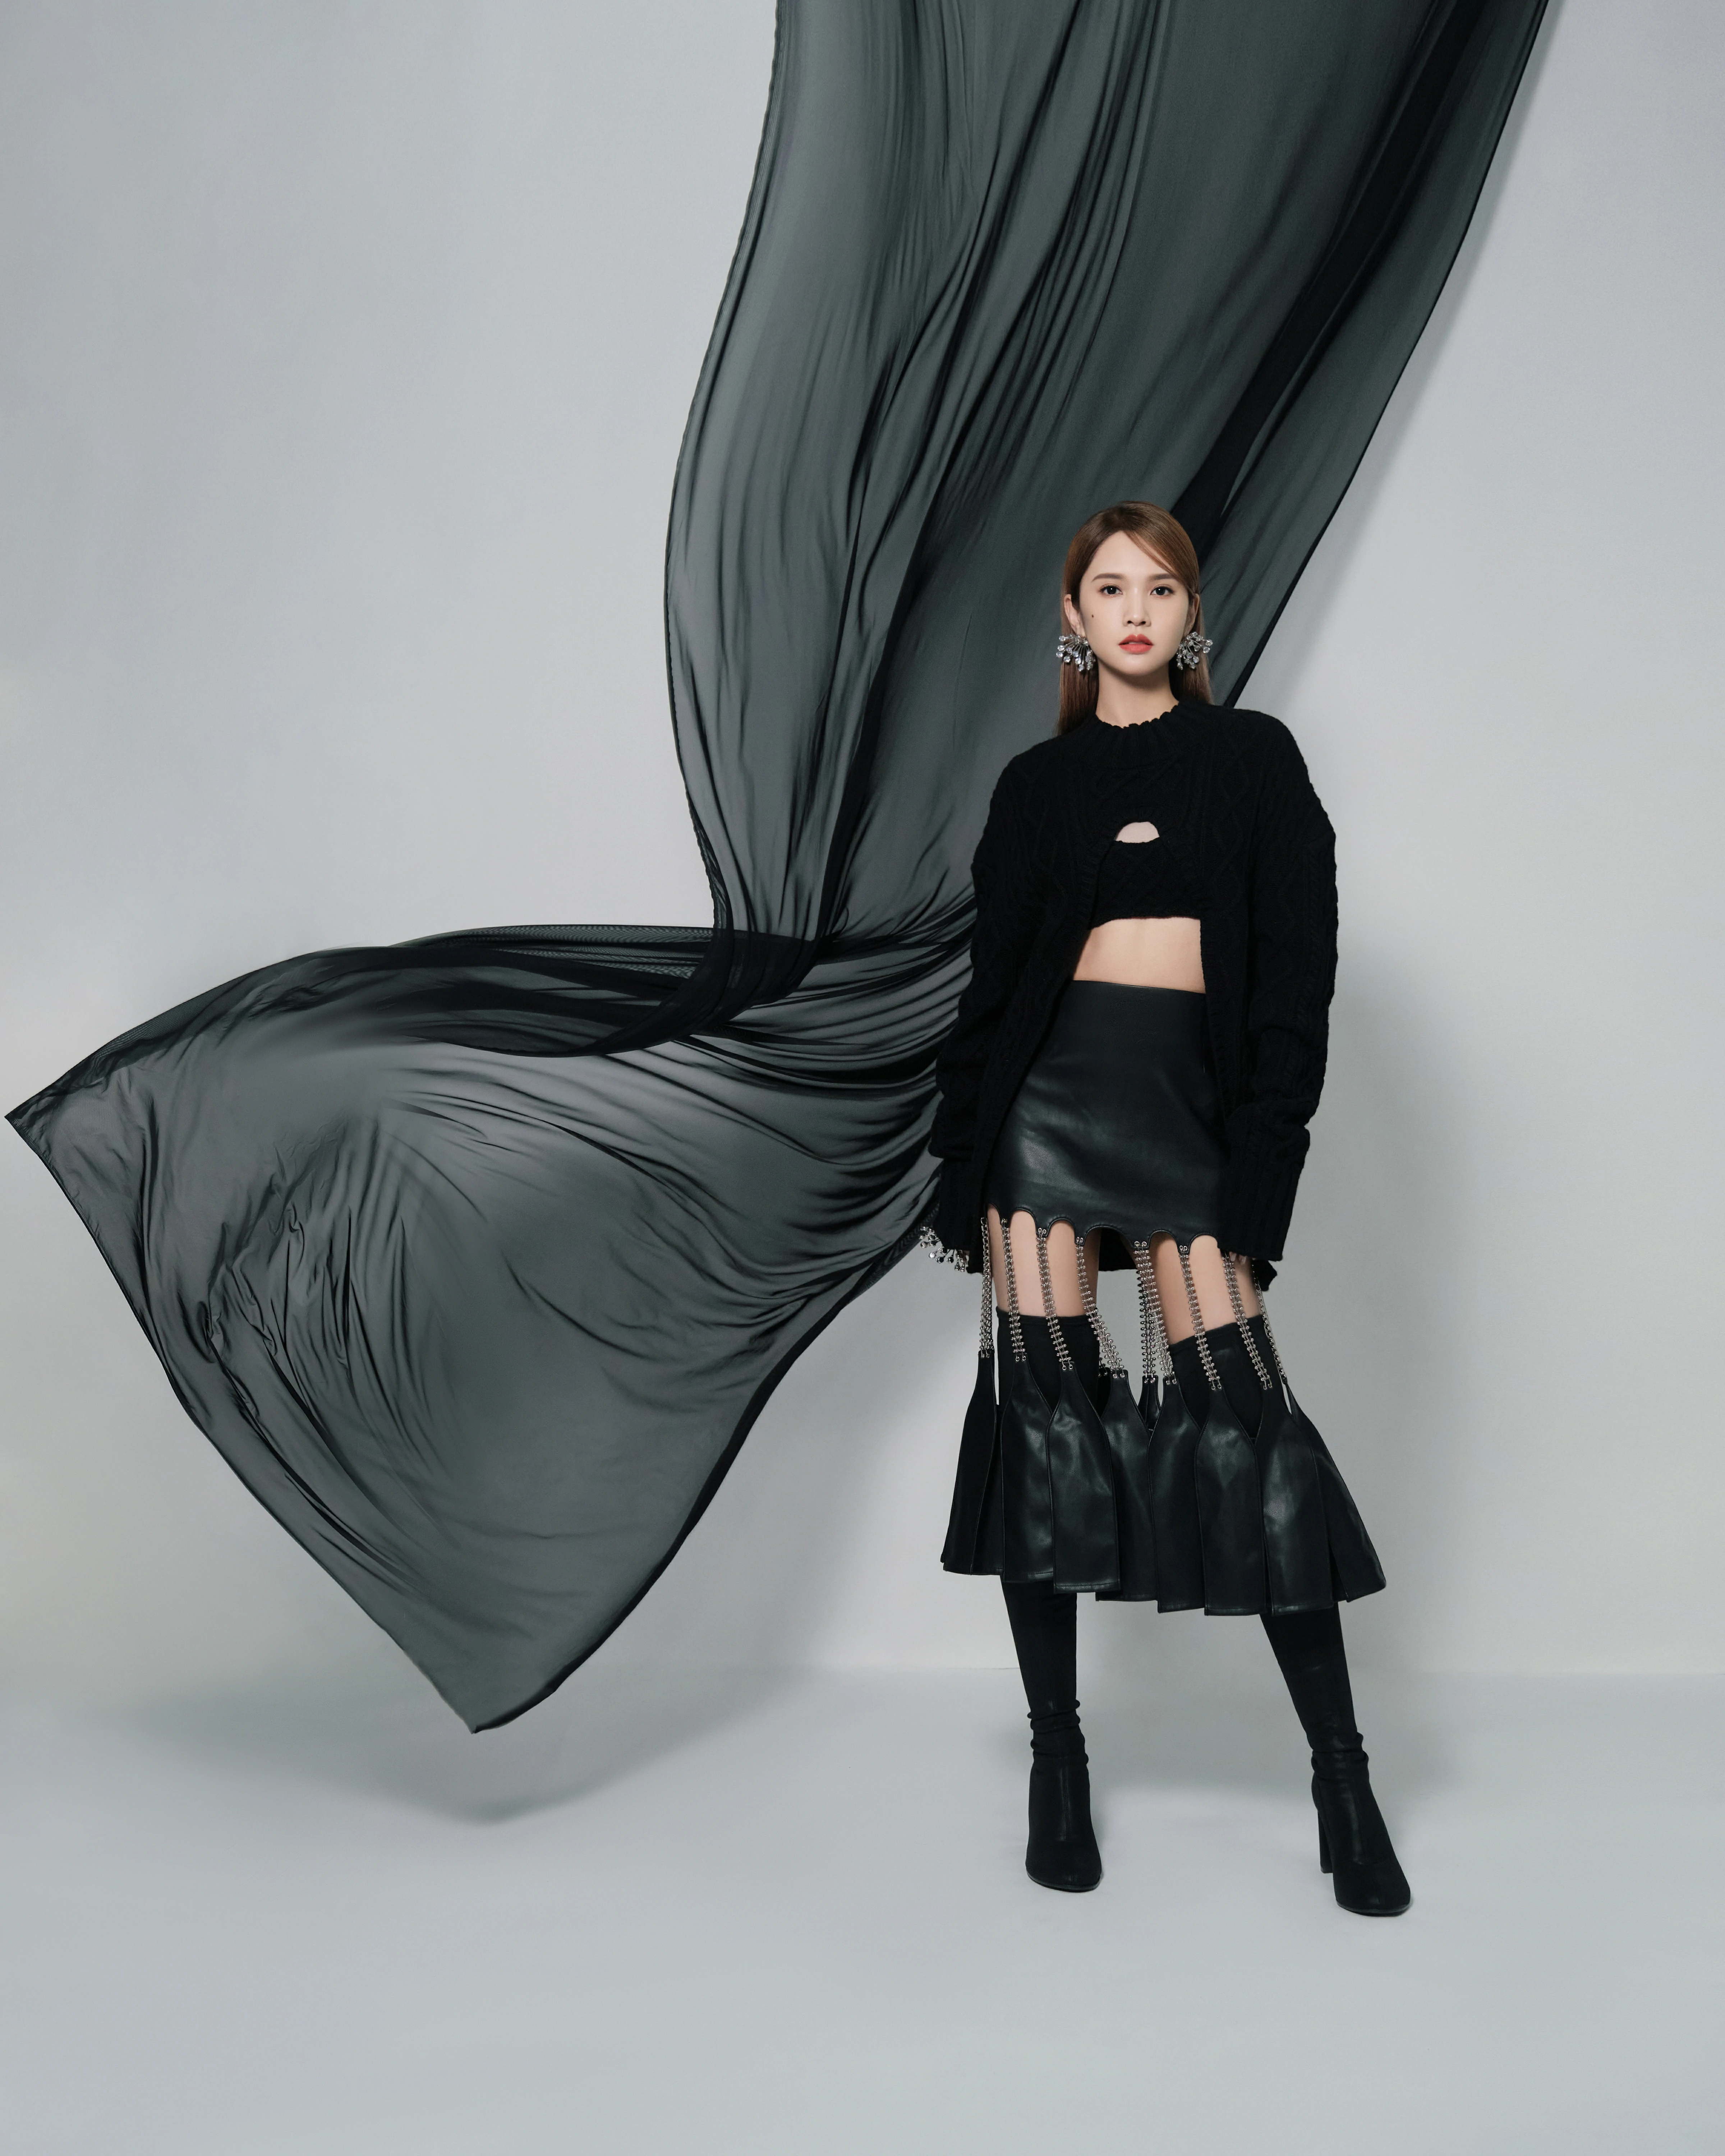 杨丞琳发布《我们的歌》舞台照 链条流苏皮裙造型秀小蛮腰,9